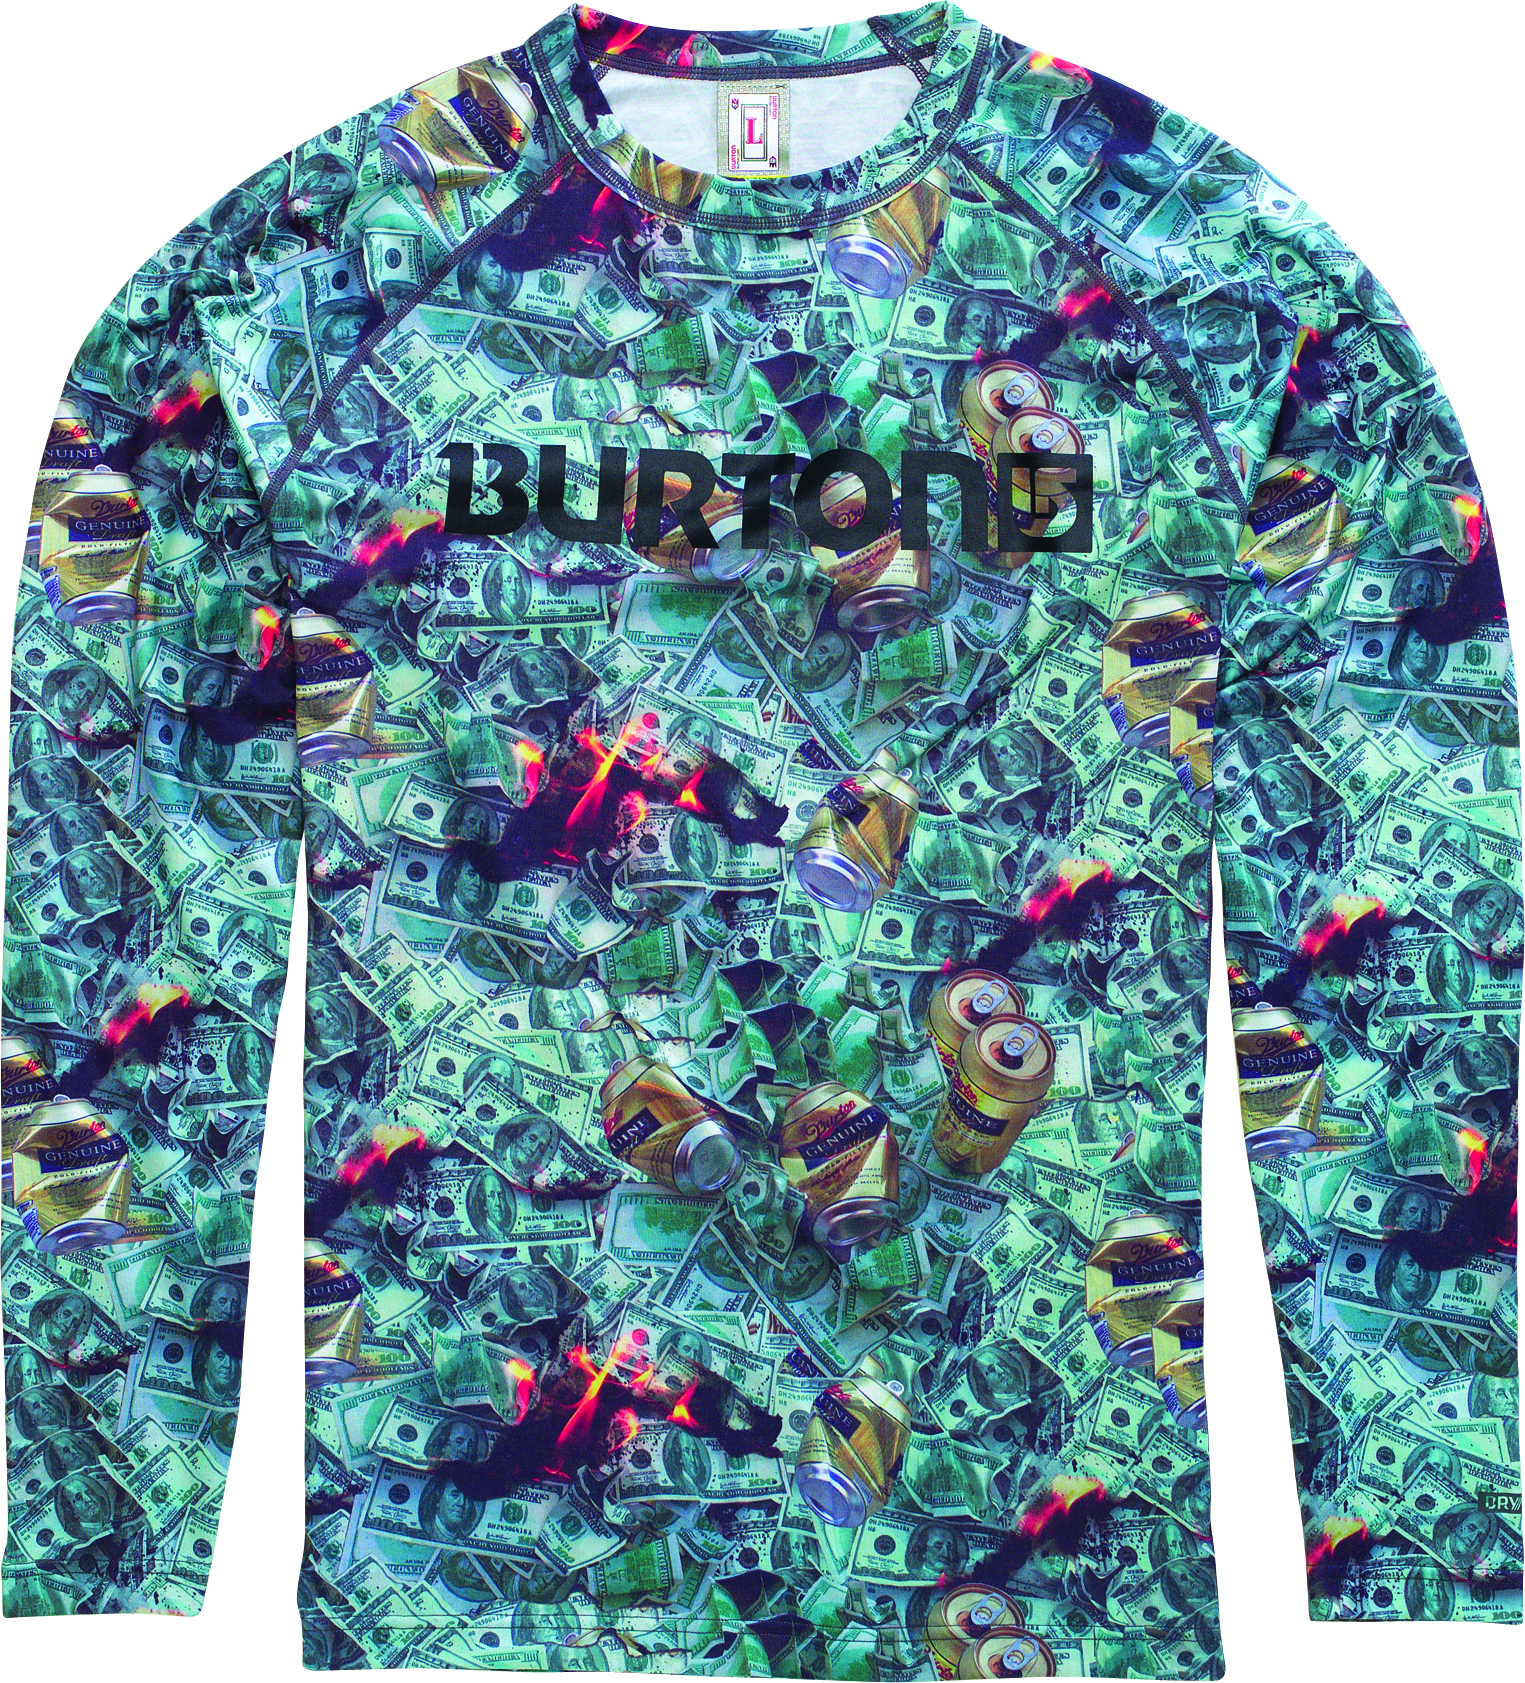 Burton Midweight Shirt aláöltöző felső  Férfi aláöltöző felső. DRYRIDE Midweight anyag. Gyorsan száradó, lélegző anyag.